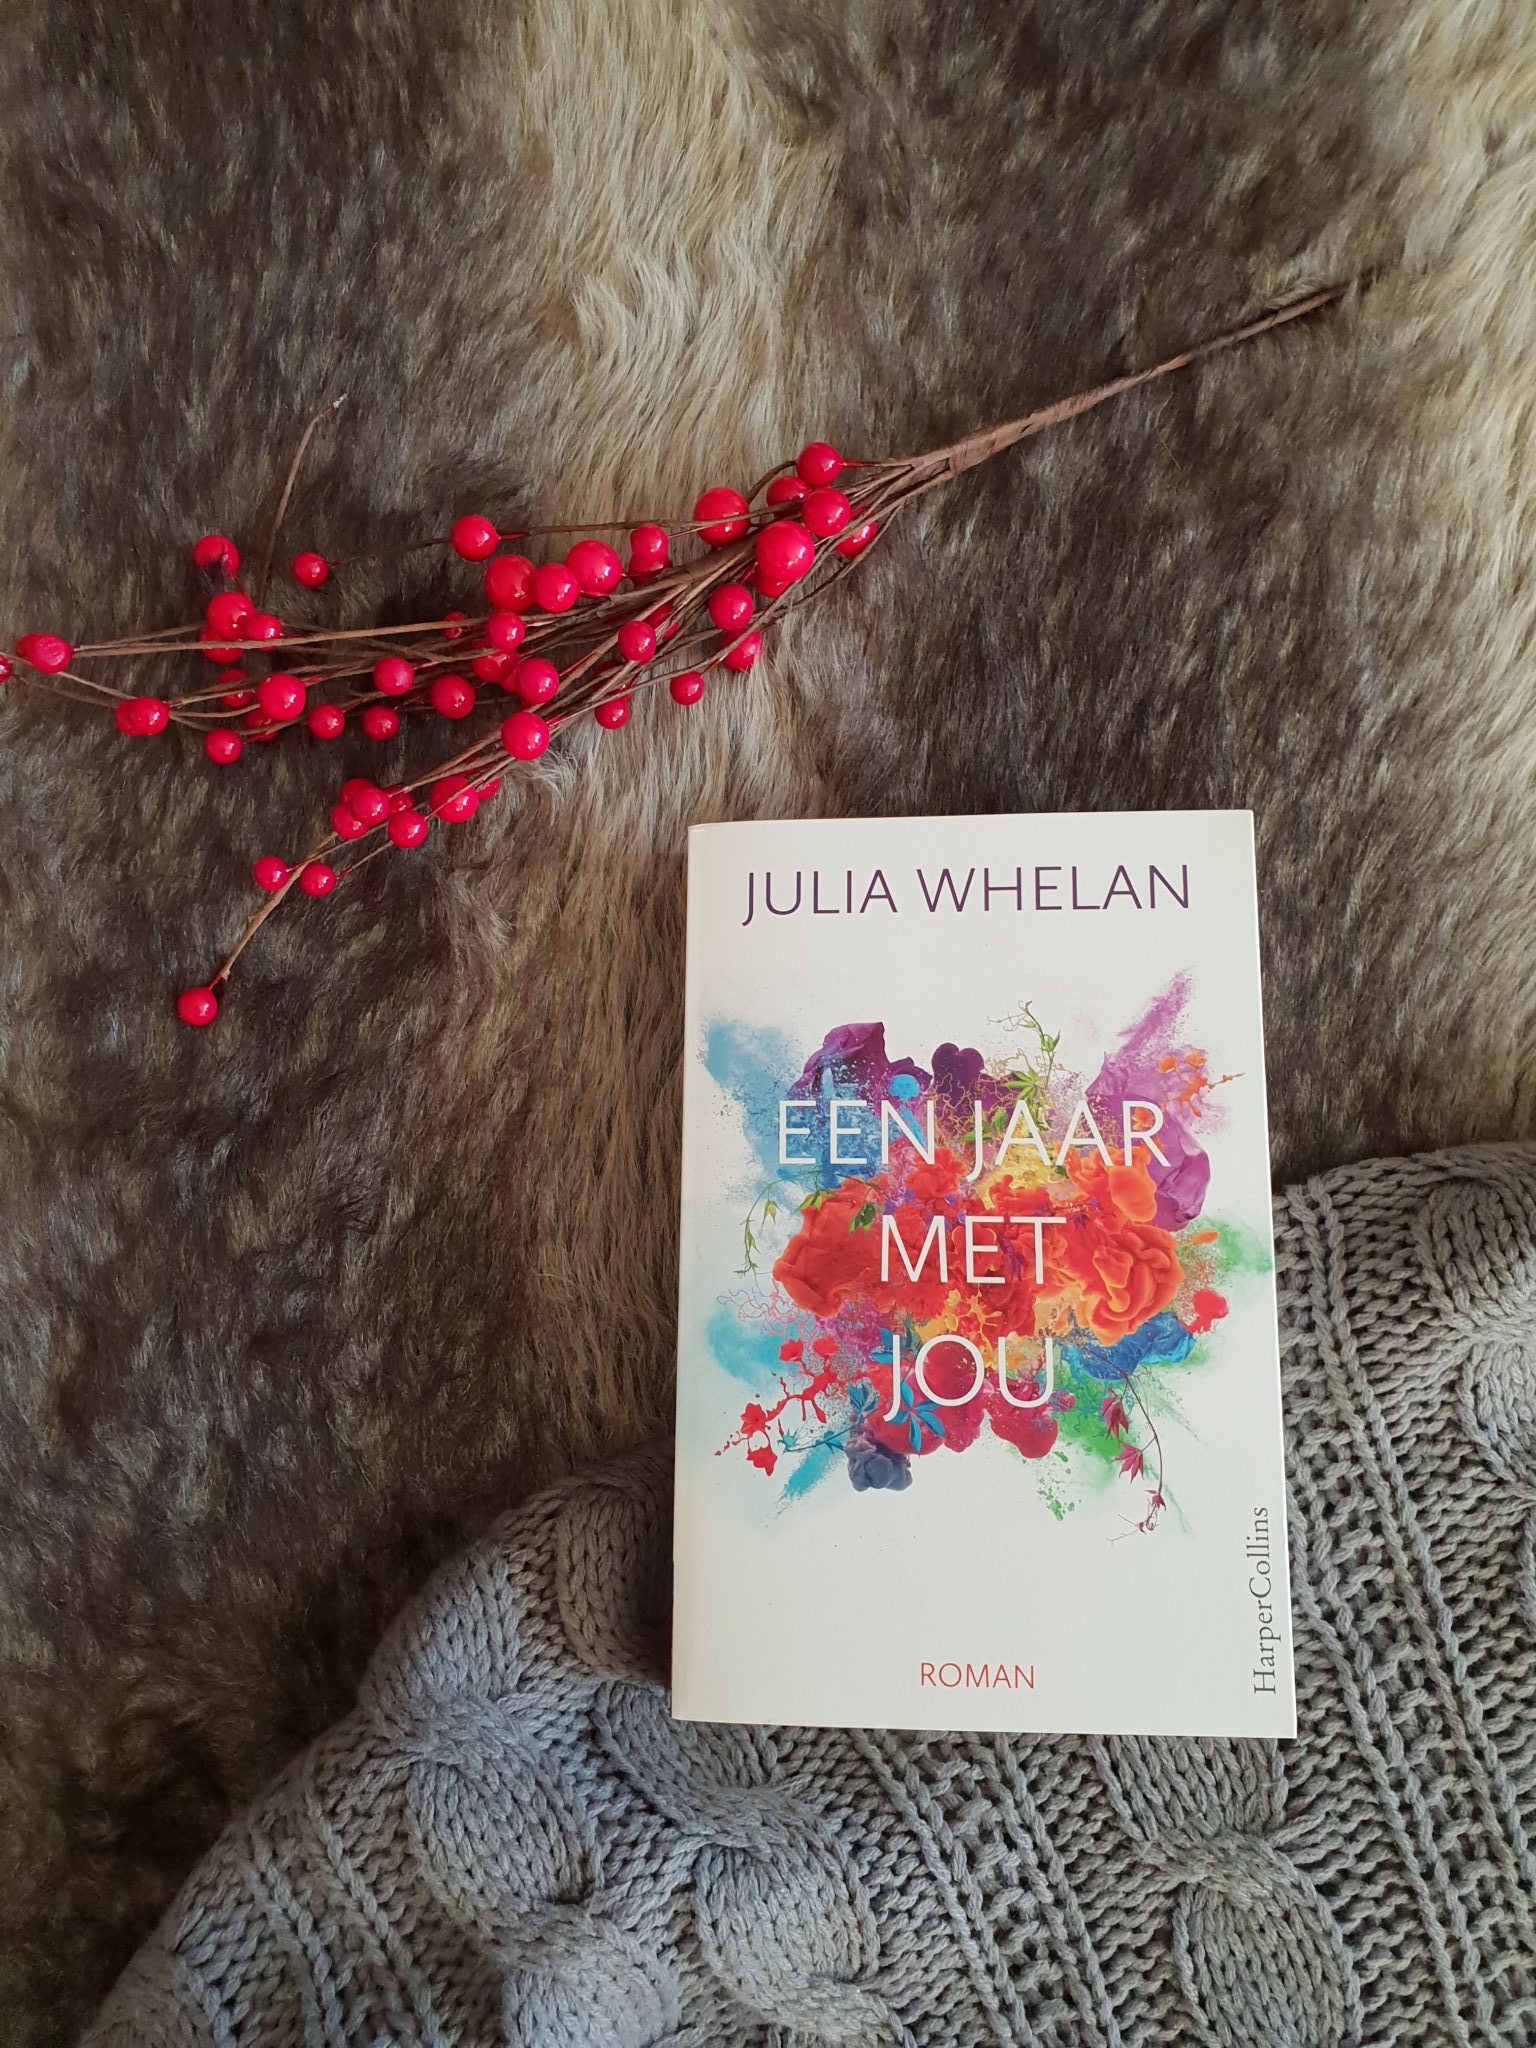 Book Tuesday: Een jaar met jou – Julia Whelan